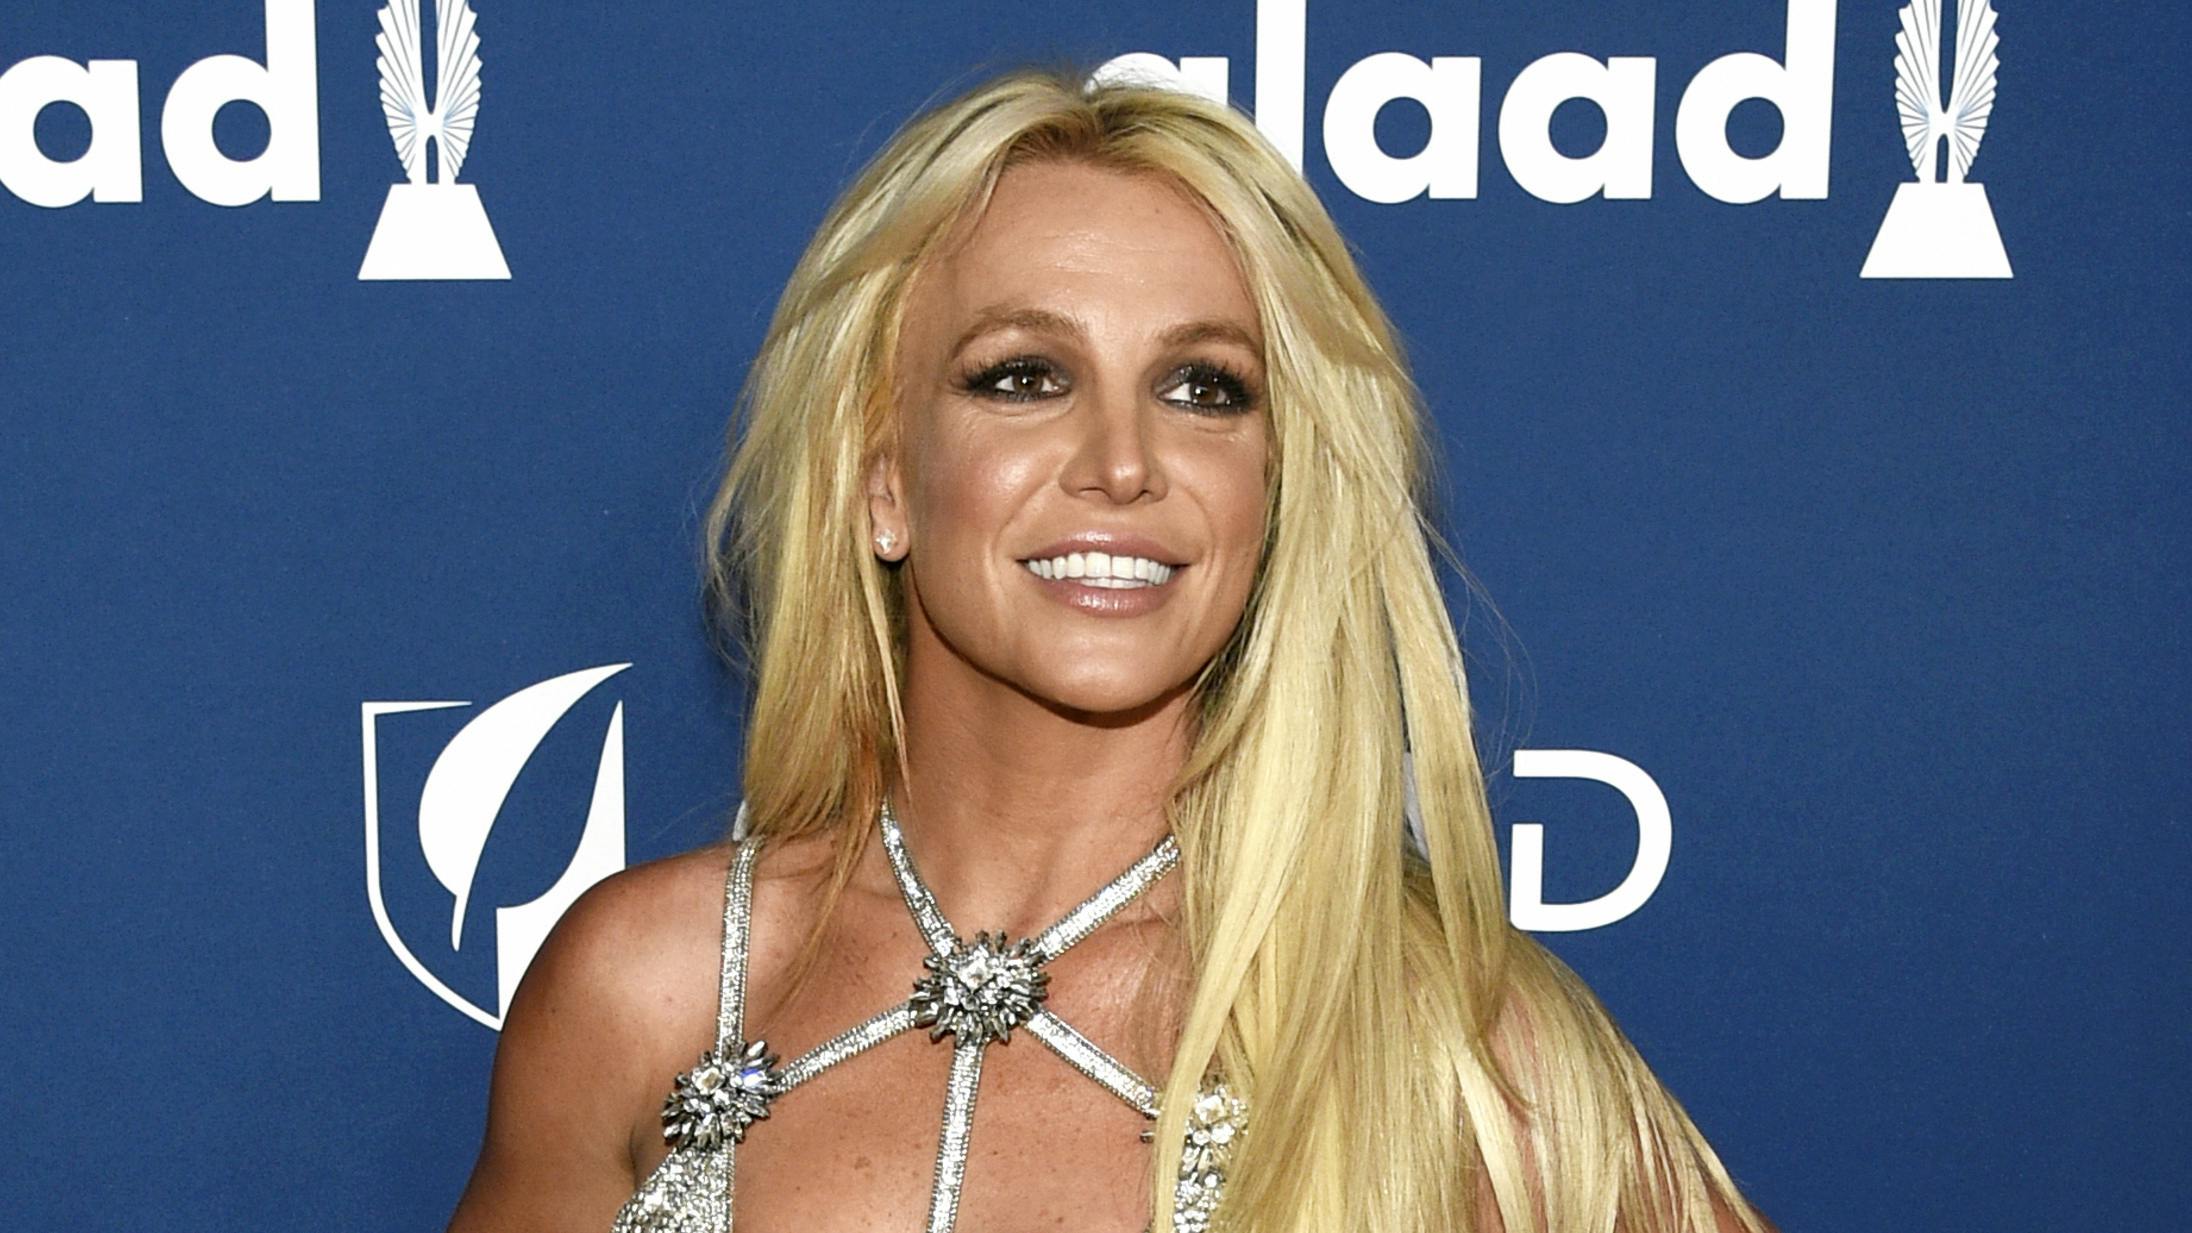 Det er langt fra første gang, at Britney Spears deaktiverer sin Instagram-profil. Denne gang skete det dog pludseligt.